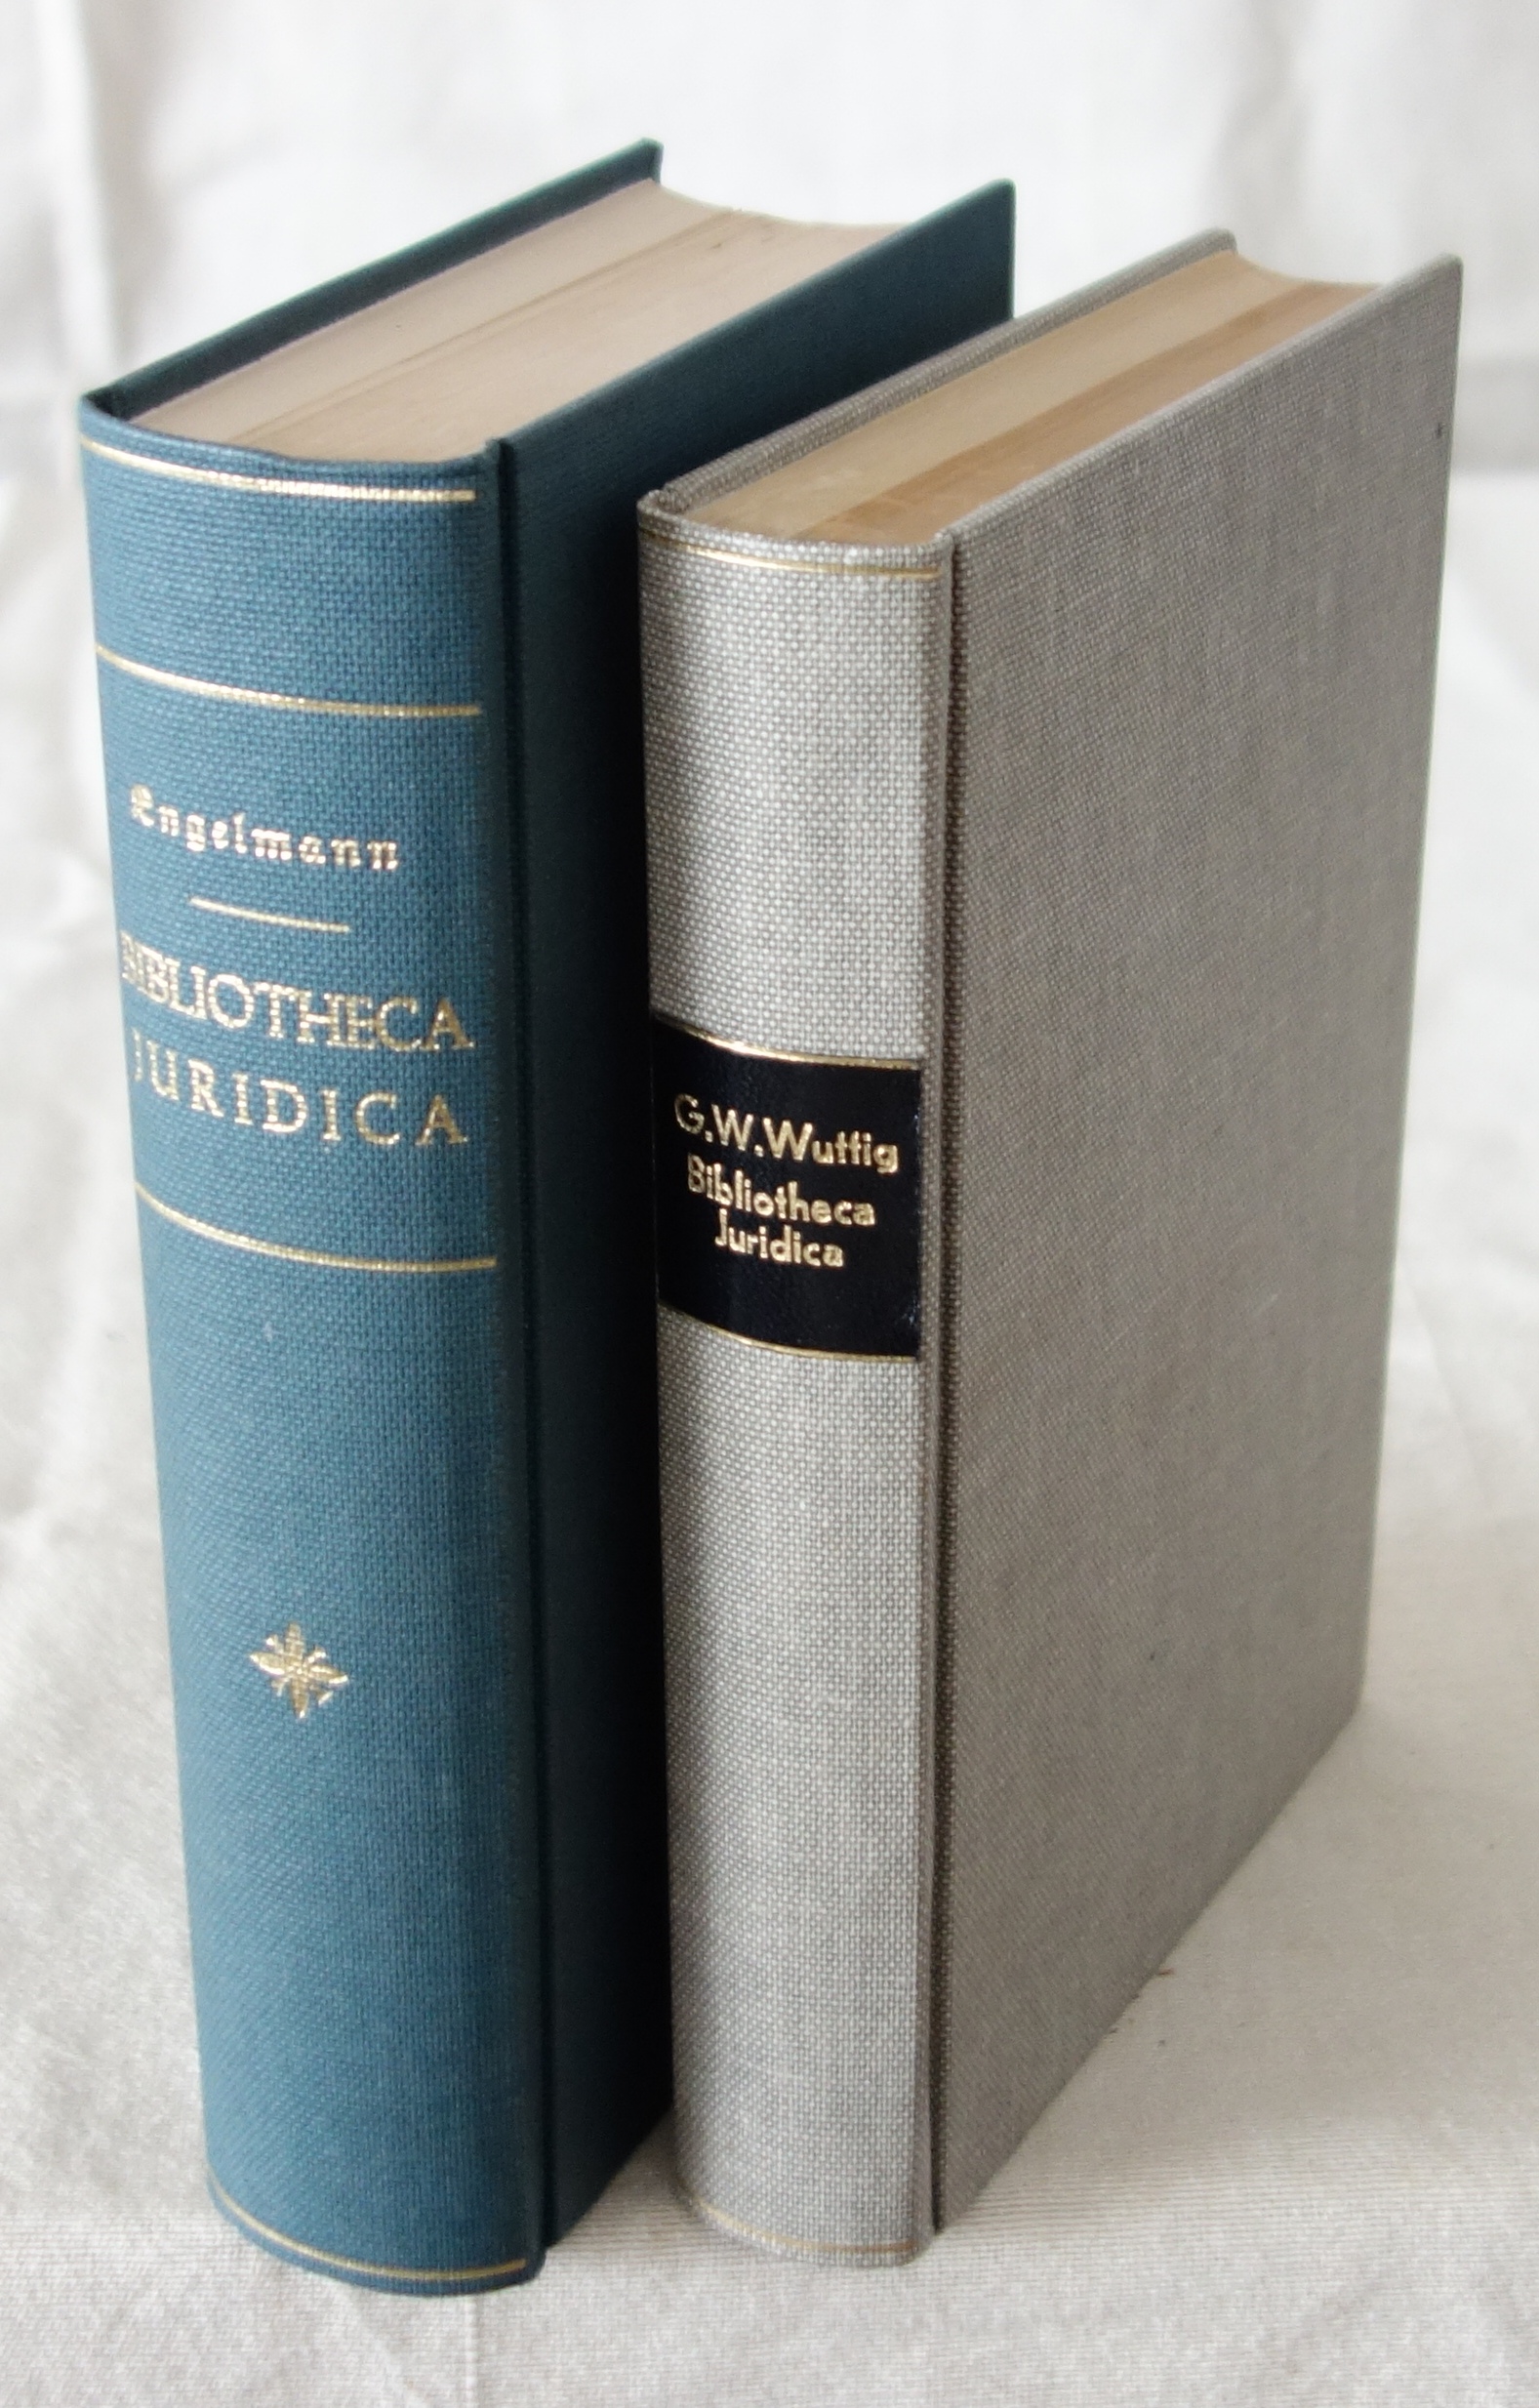 Engelmann u.a., Bibliotheca Juridica. 4 Tle. in 2 Bdn. Leipzig 1840-1877